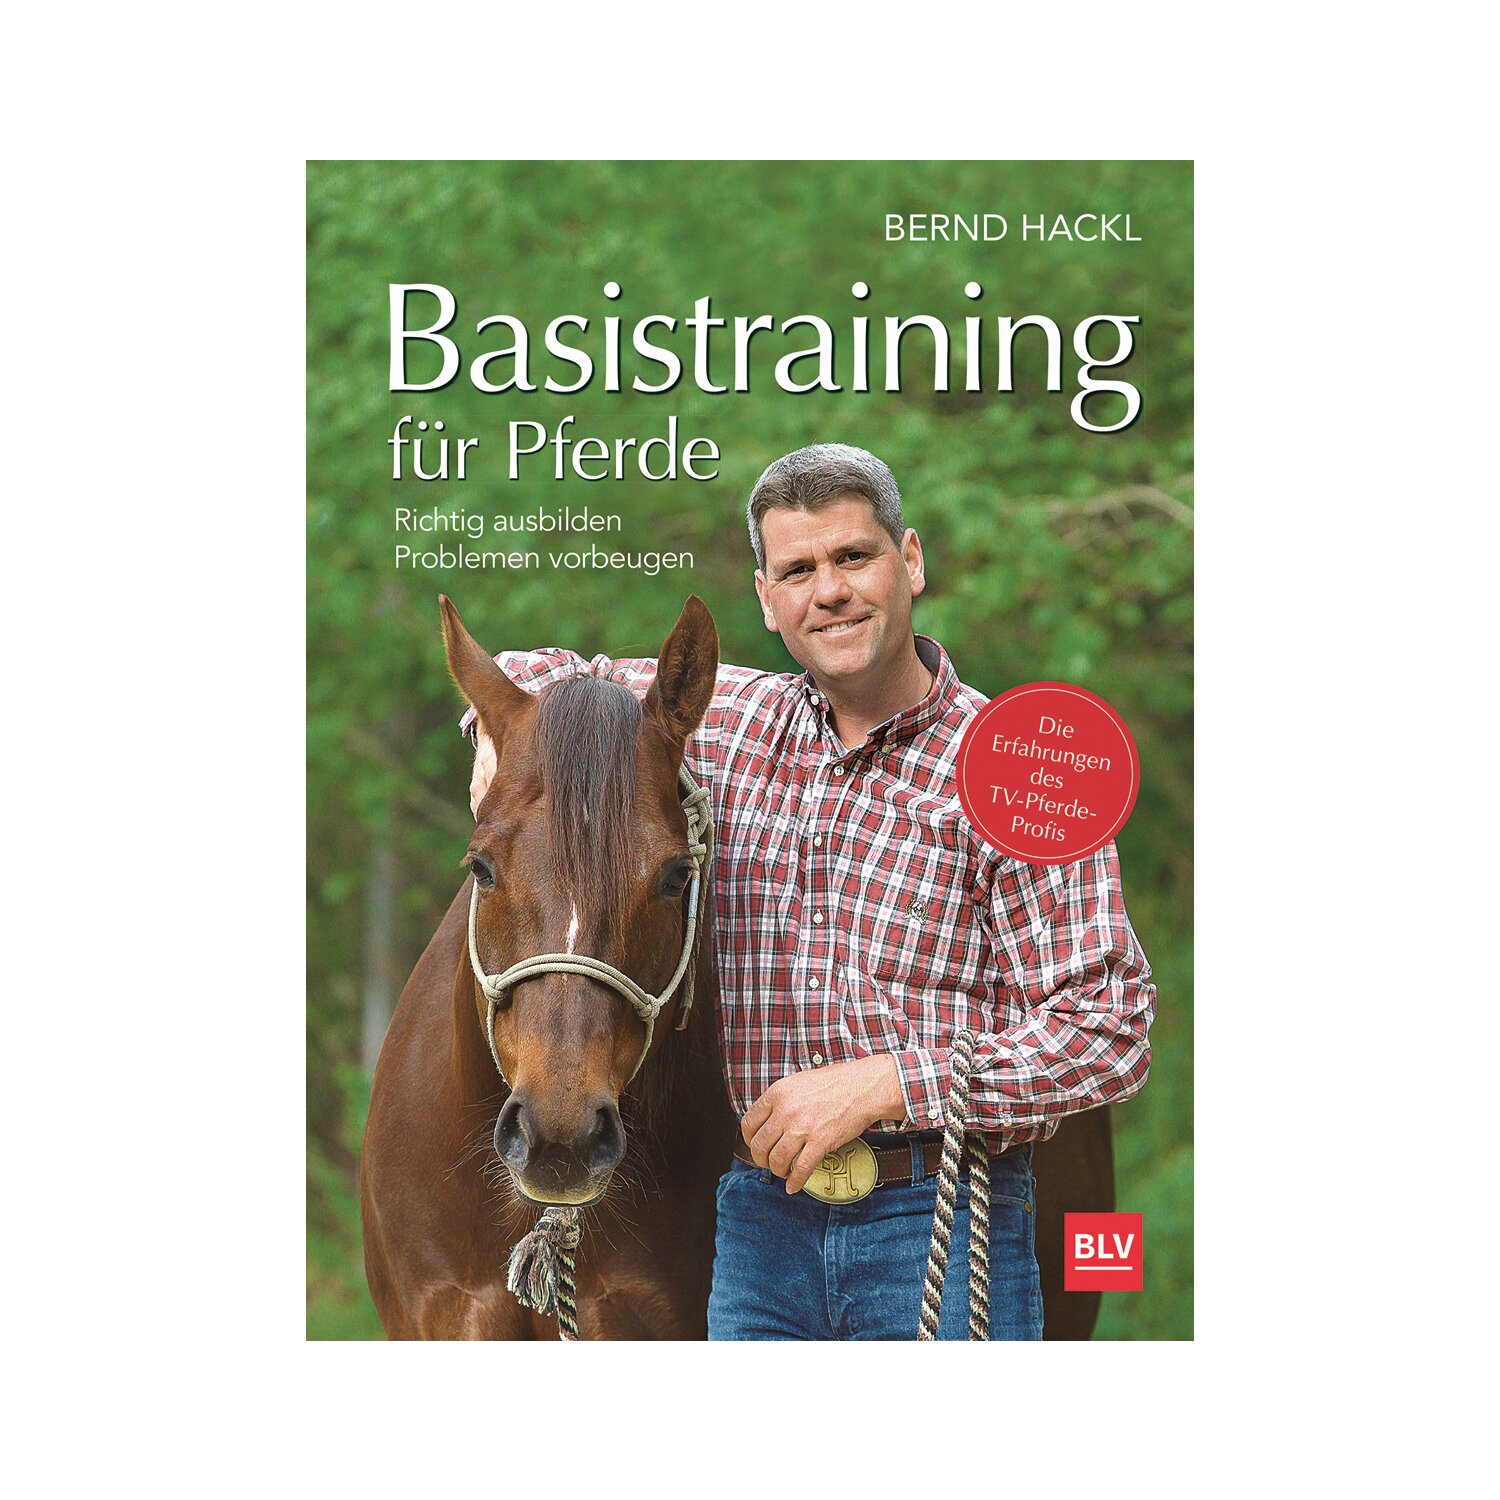 Basistraining für Pferde 